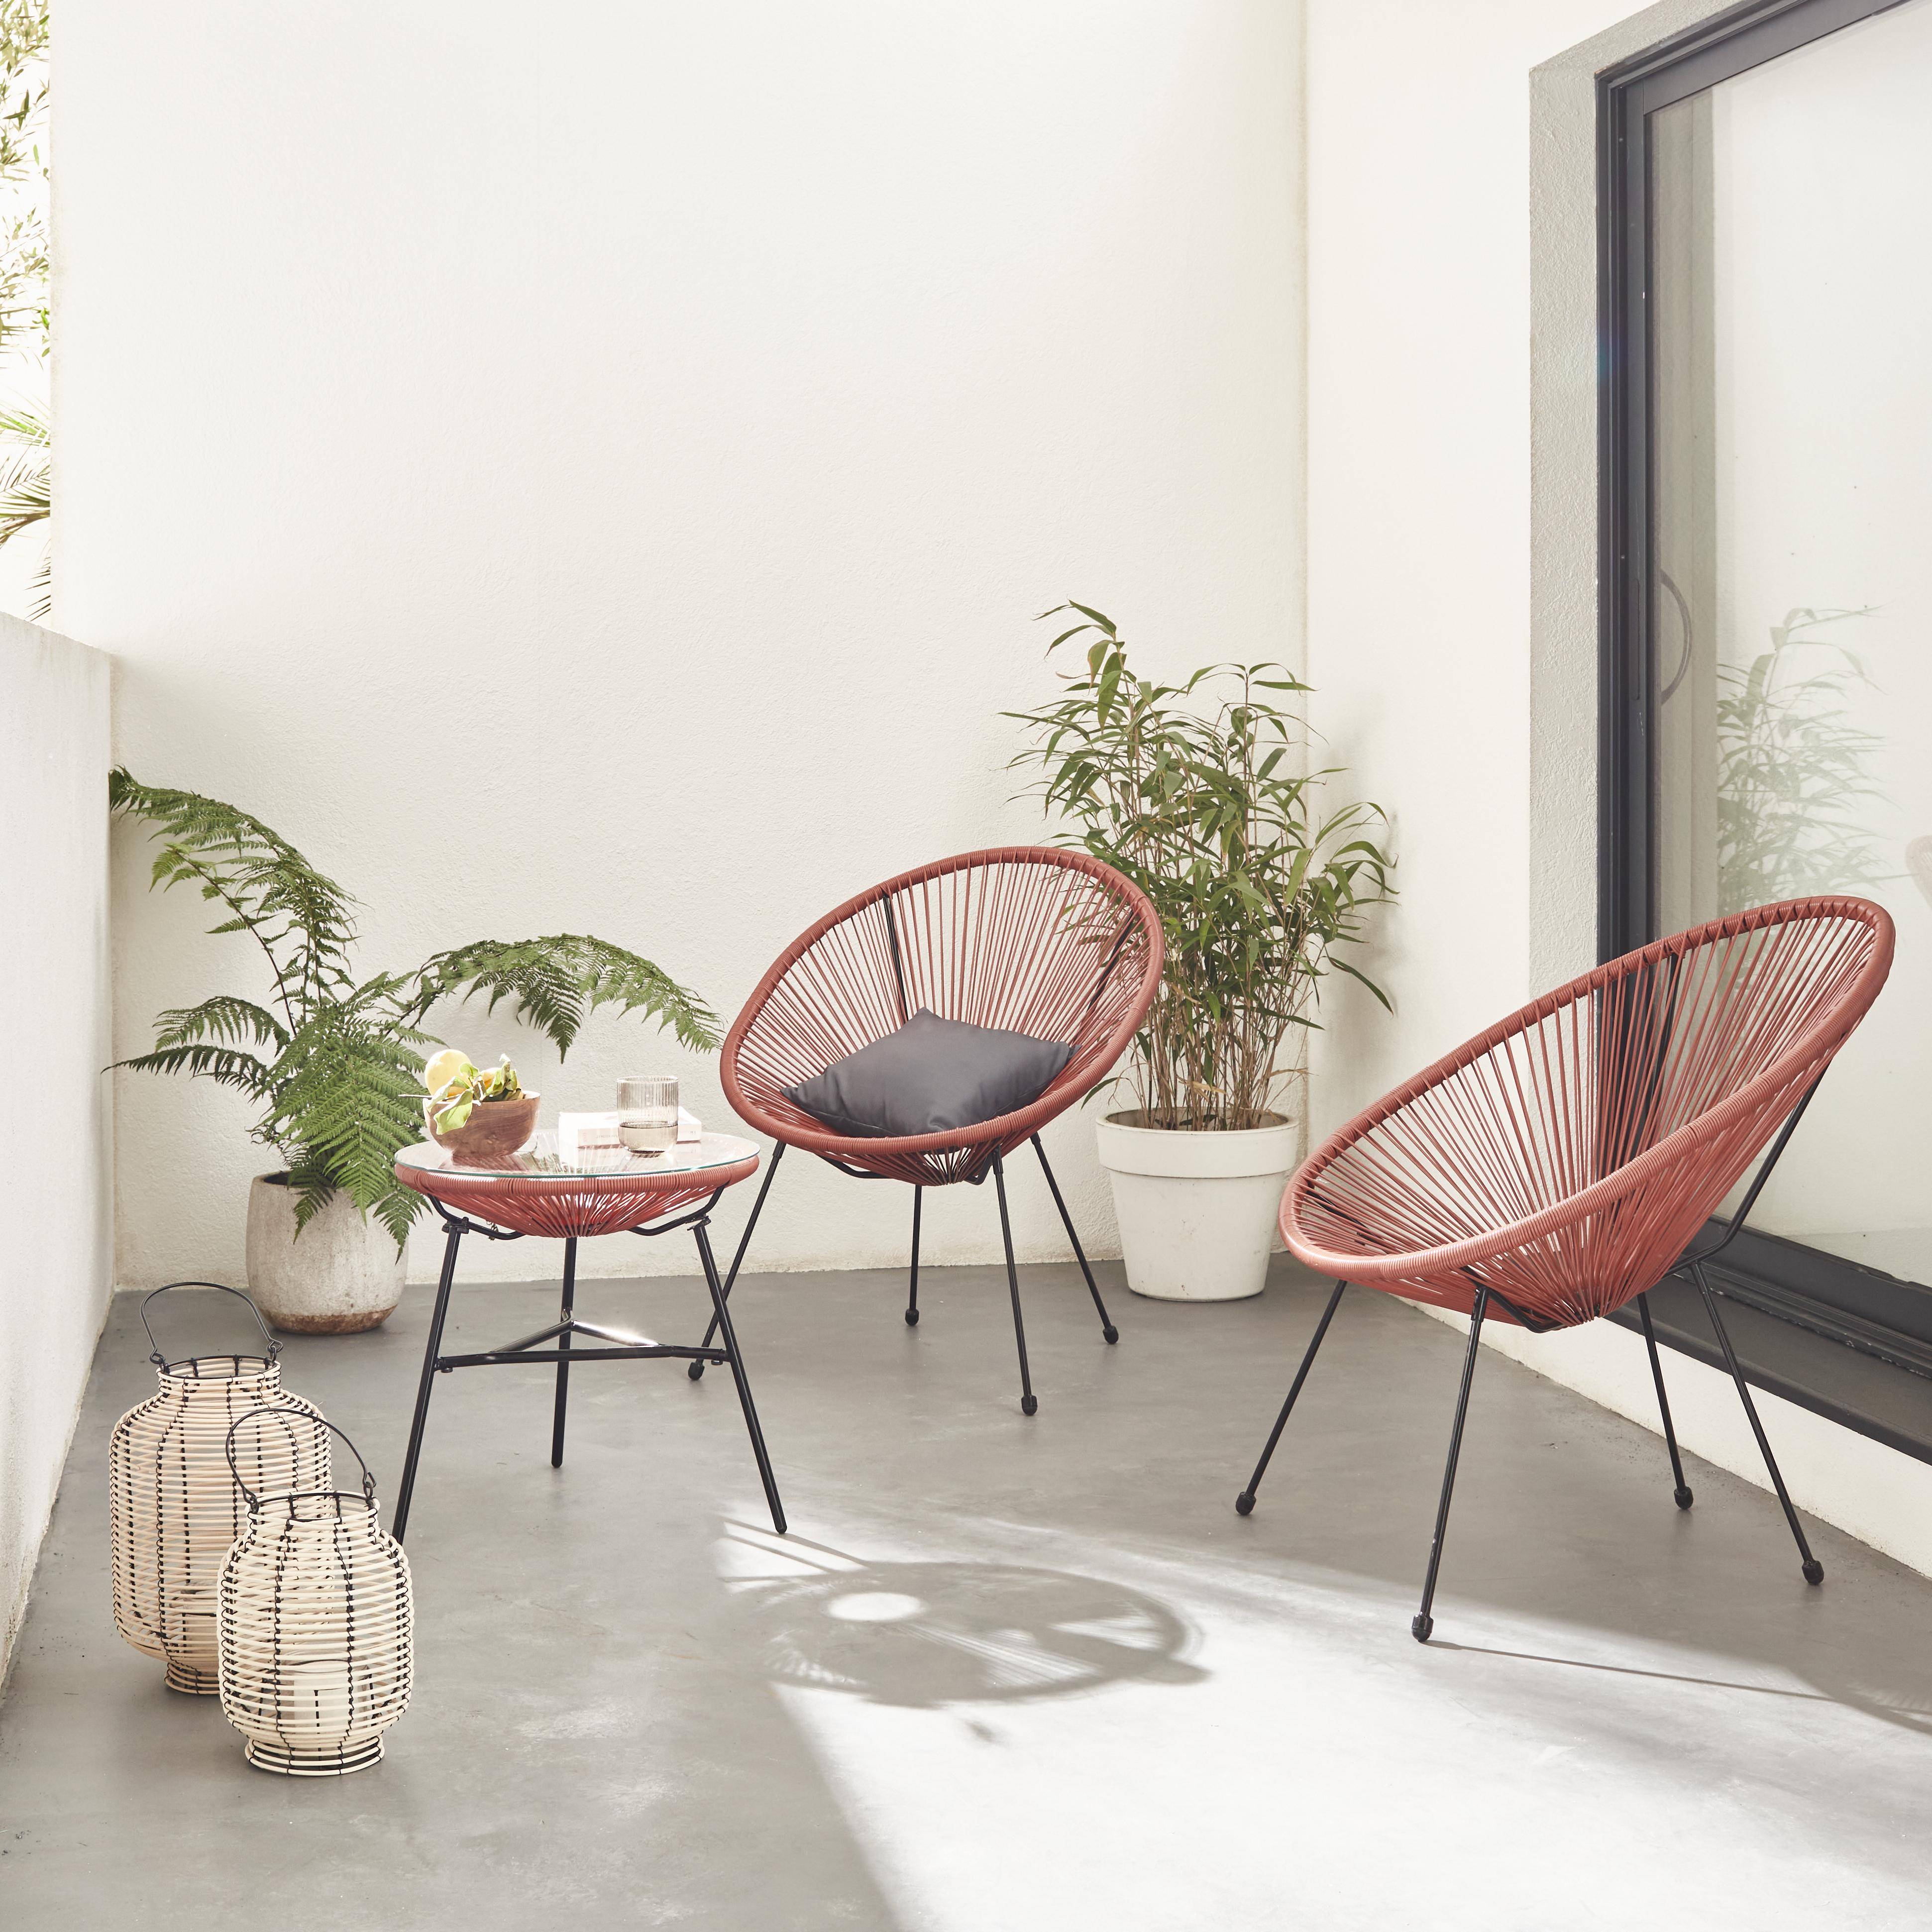 Lot de 2 fauteuils ACAPULCO forme d'oeuf avec table d'appoint - Terra Cotta - Fauteuils 4 pieds design rétro, avec table basse, cordage plastique, intérieur / extérieur Photo1